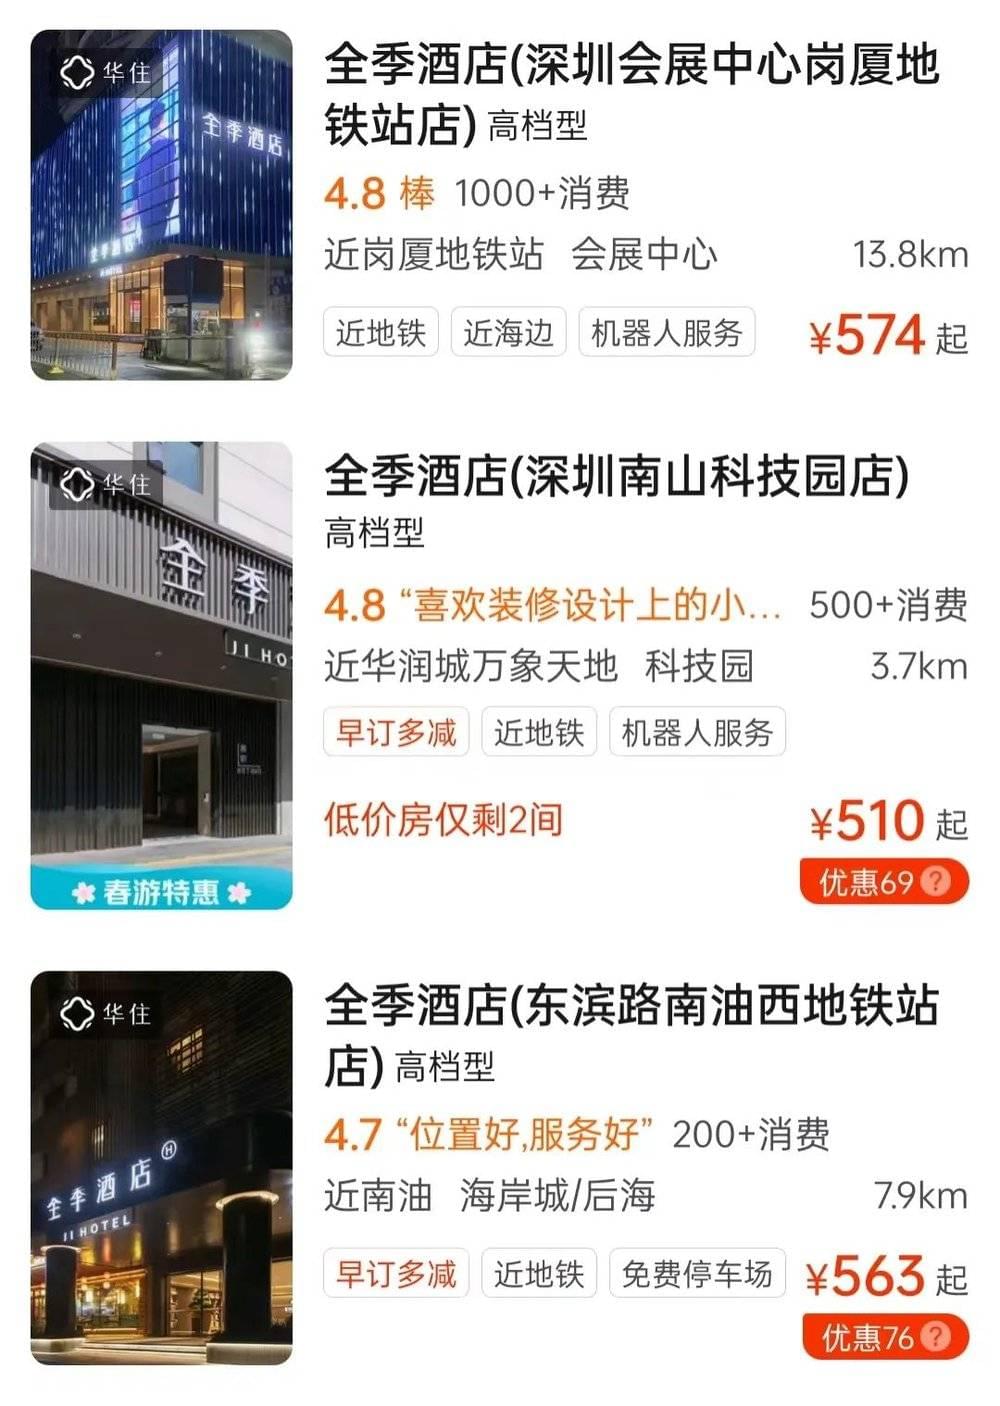 深圳全季酒店价格也是这样。<br>